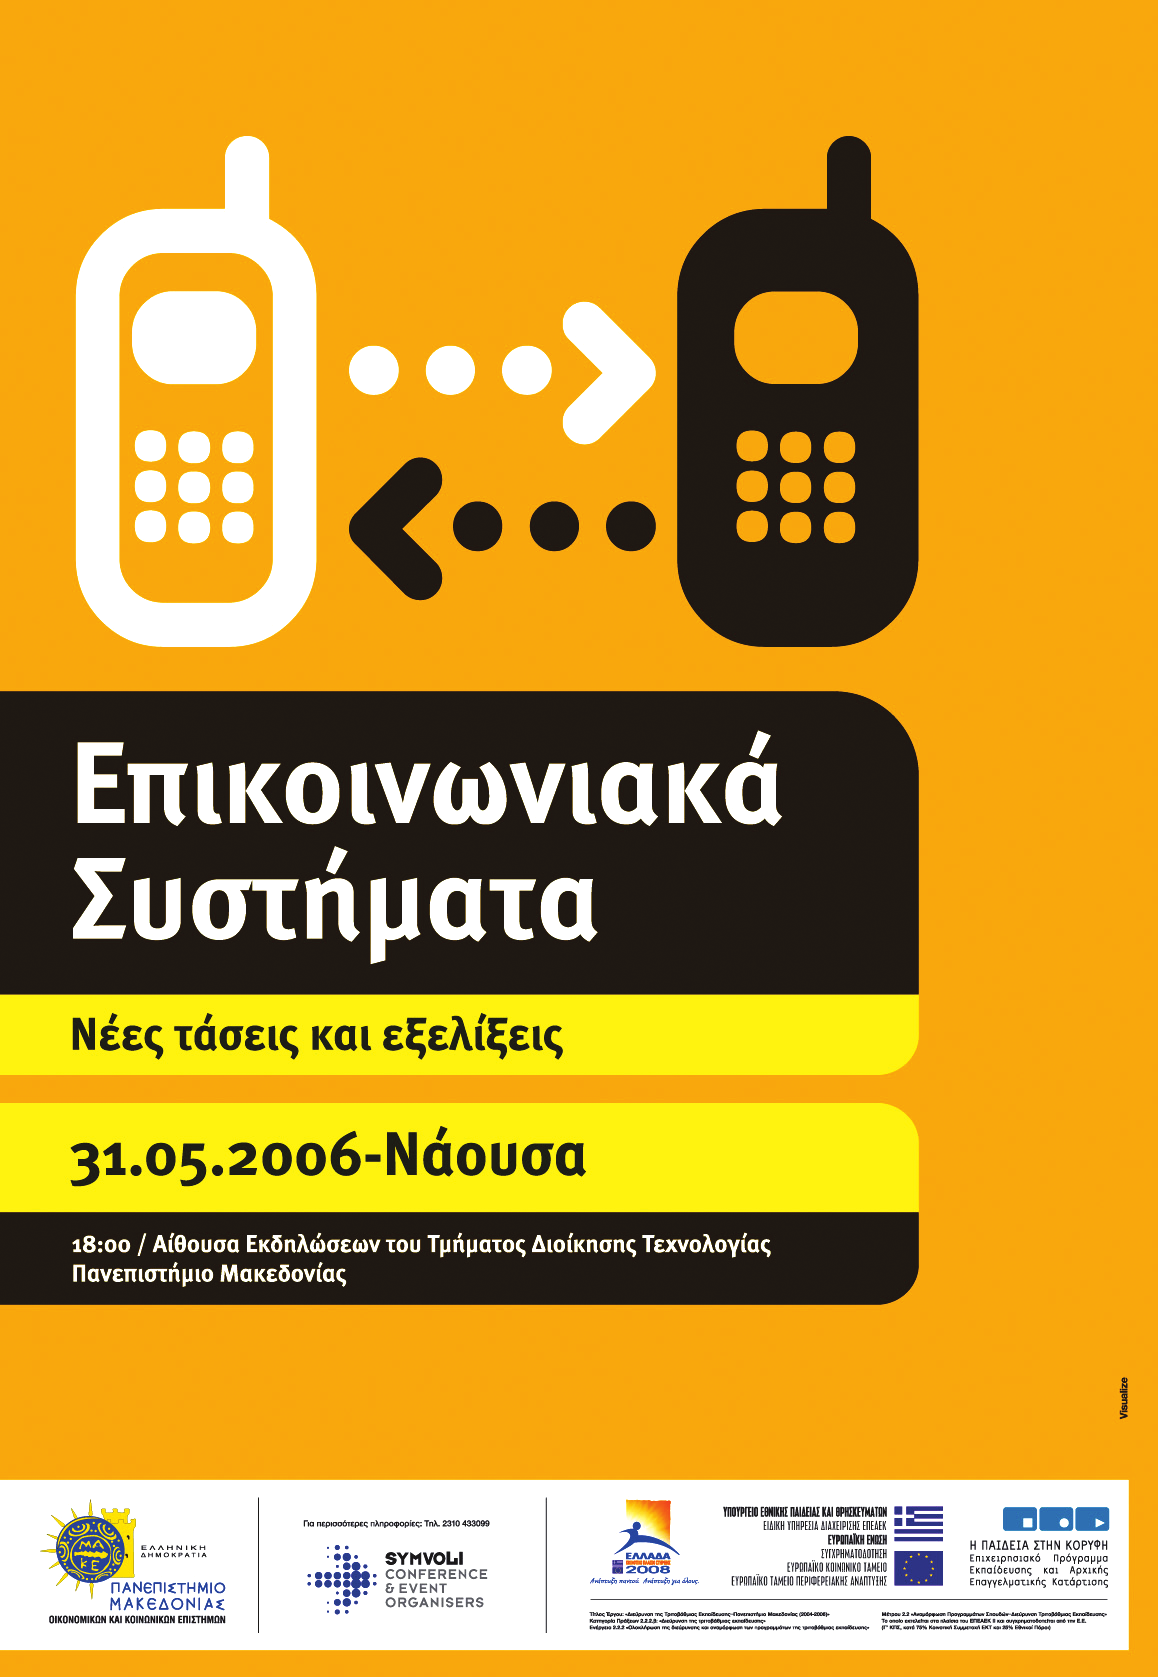 Π.Ε.5 Δημοσιότητα Στο πλαίσιο αυτού του πακέτου εργασίας πραγματοποιήθηκε η εκτύπωση του οδηγού σπουδών, ελληνόγλωσσου και ξενόγλωσσου, για κάθε ένα από τα ακαδημαϊκά έτη 2004-2008 και η εκτύπωση